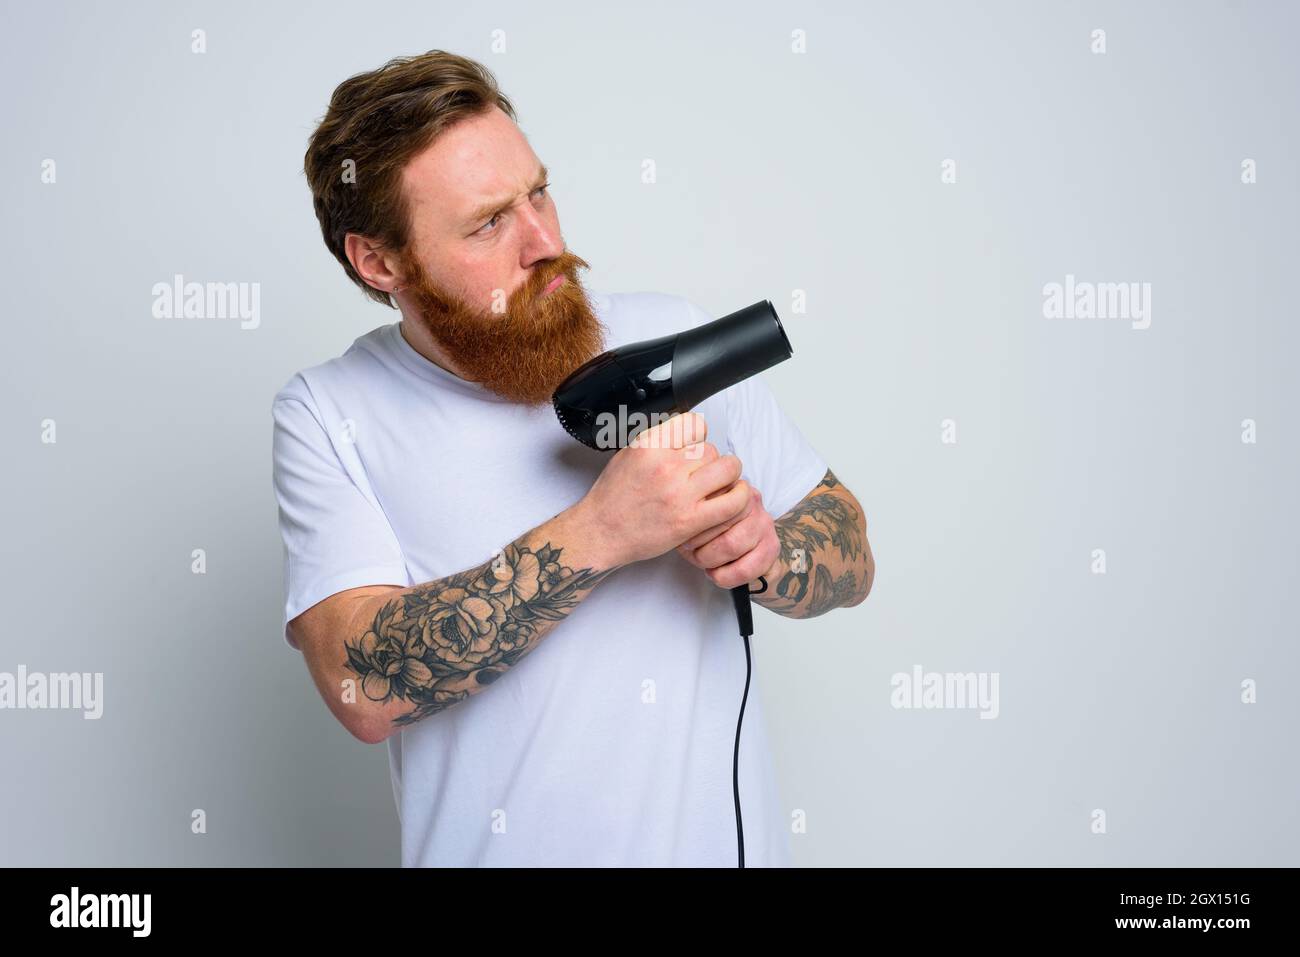 Serious Mann mit Bart spielen mit Haar dryeras eine Pistole Stockfoto